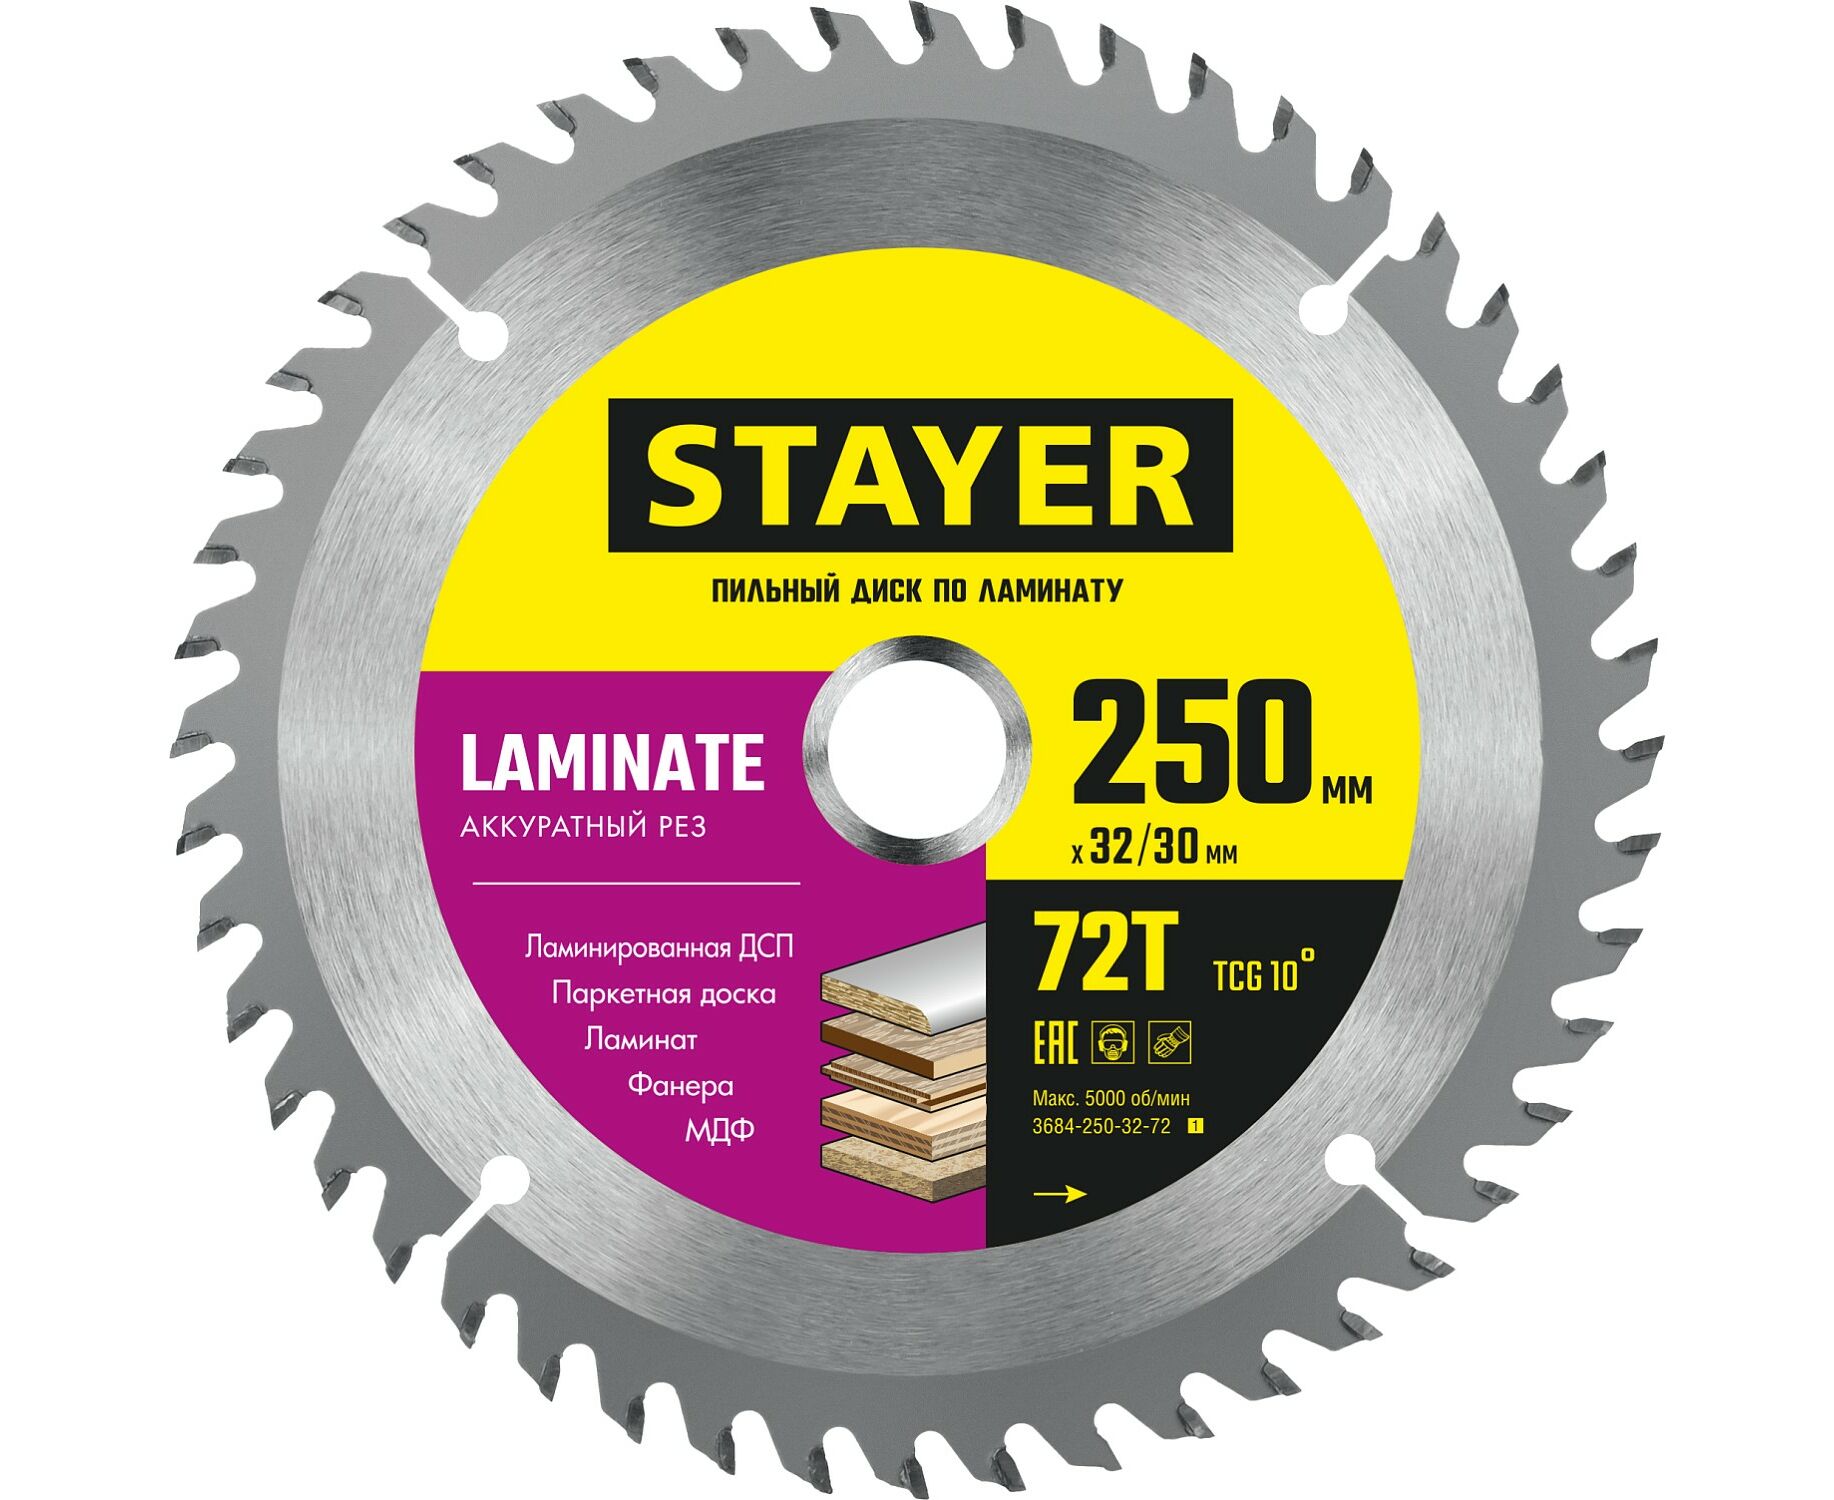 Пильный диск STAYER LAMINATE 250 x 32/30мм 72Т, по ламинату, аккуратный рез